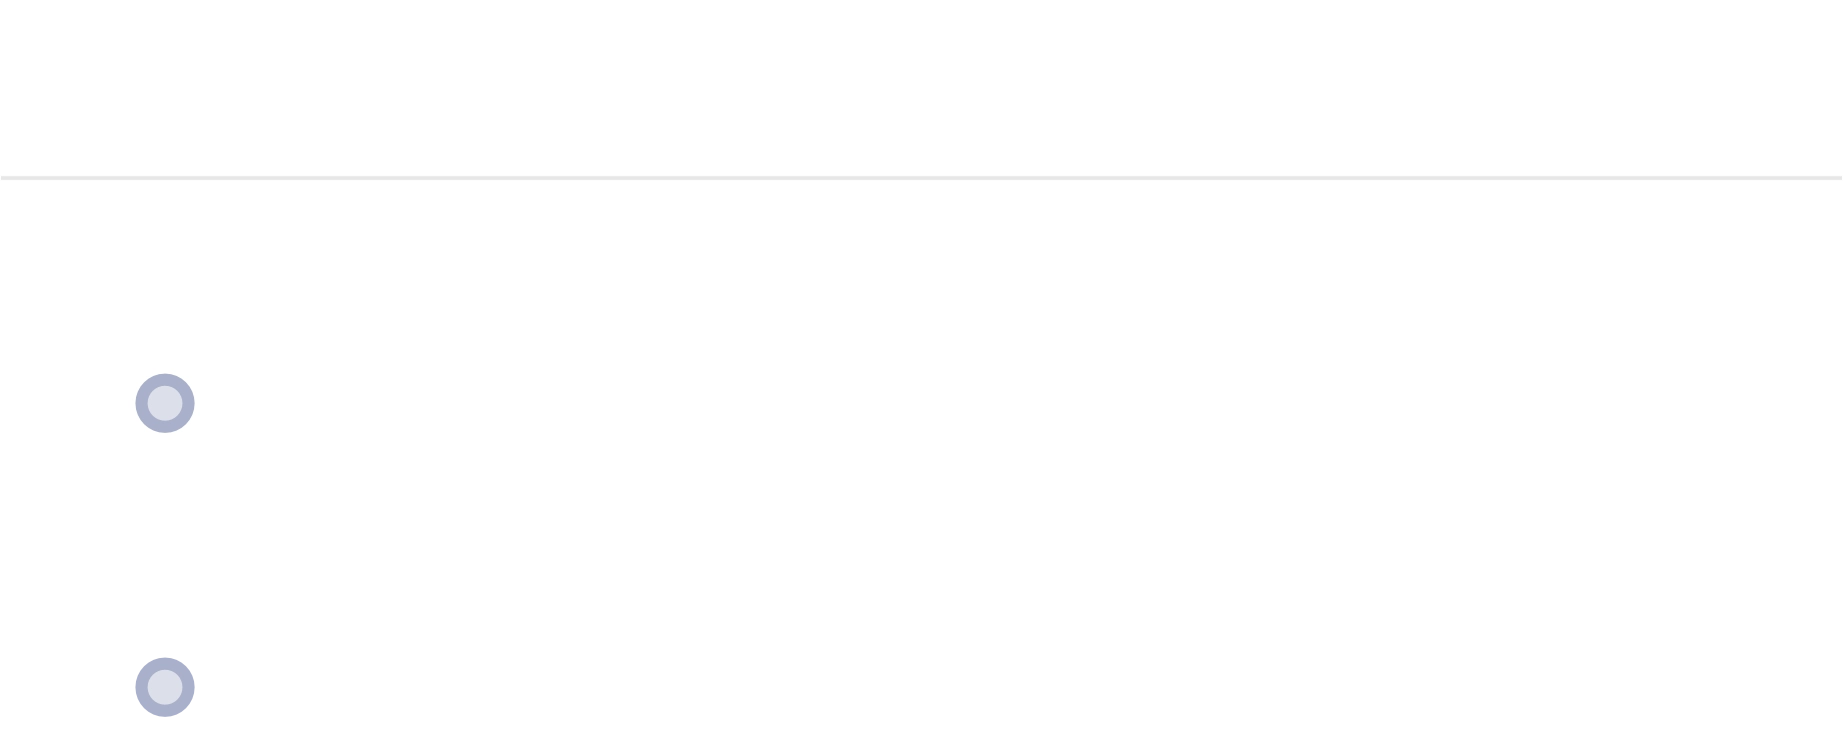 monitoring 1